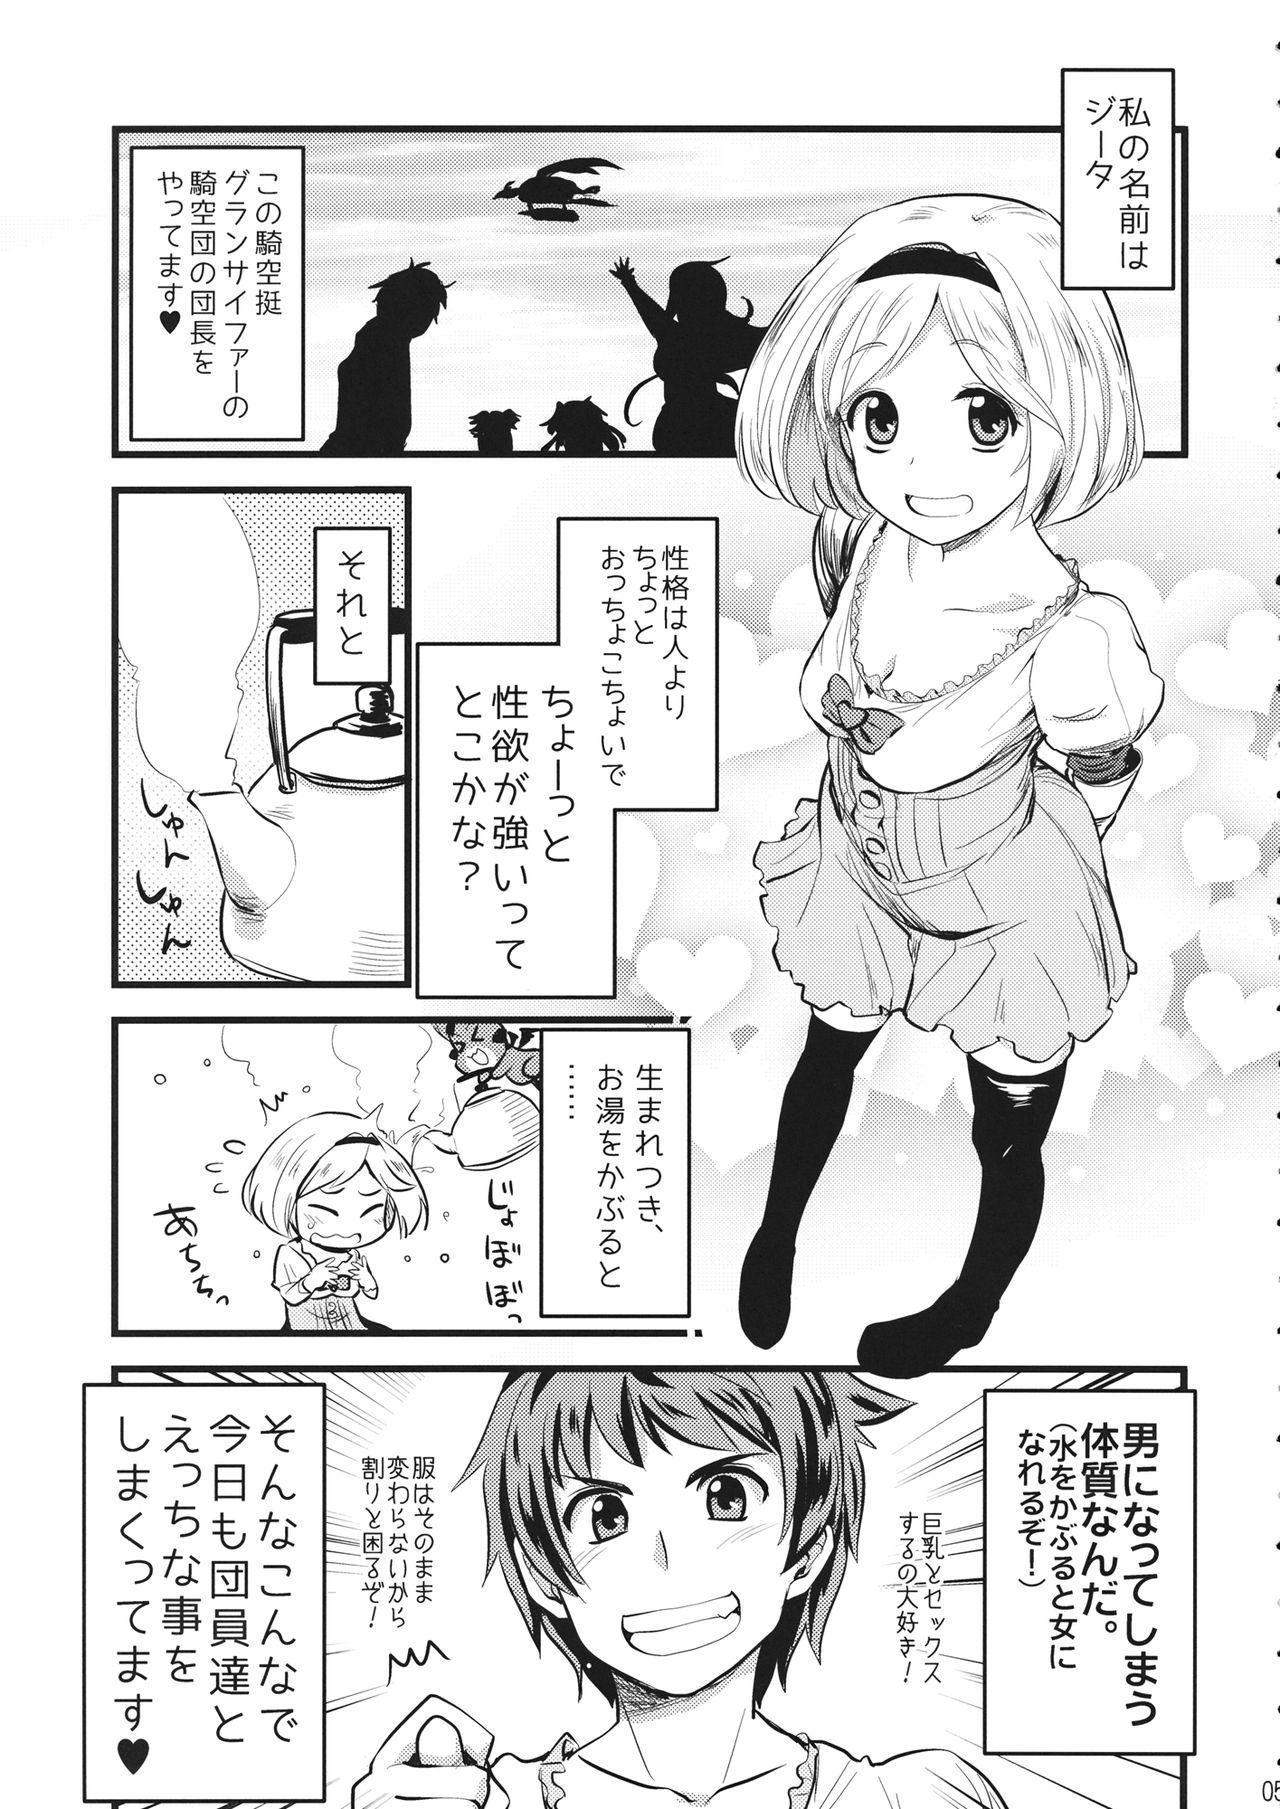 18yearsold Mizu o Kaburu to Onna ni Nacchau Fuzaketa Taishitsu. - Granblue fantasy Casero - Page 4